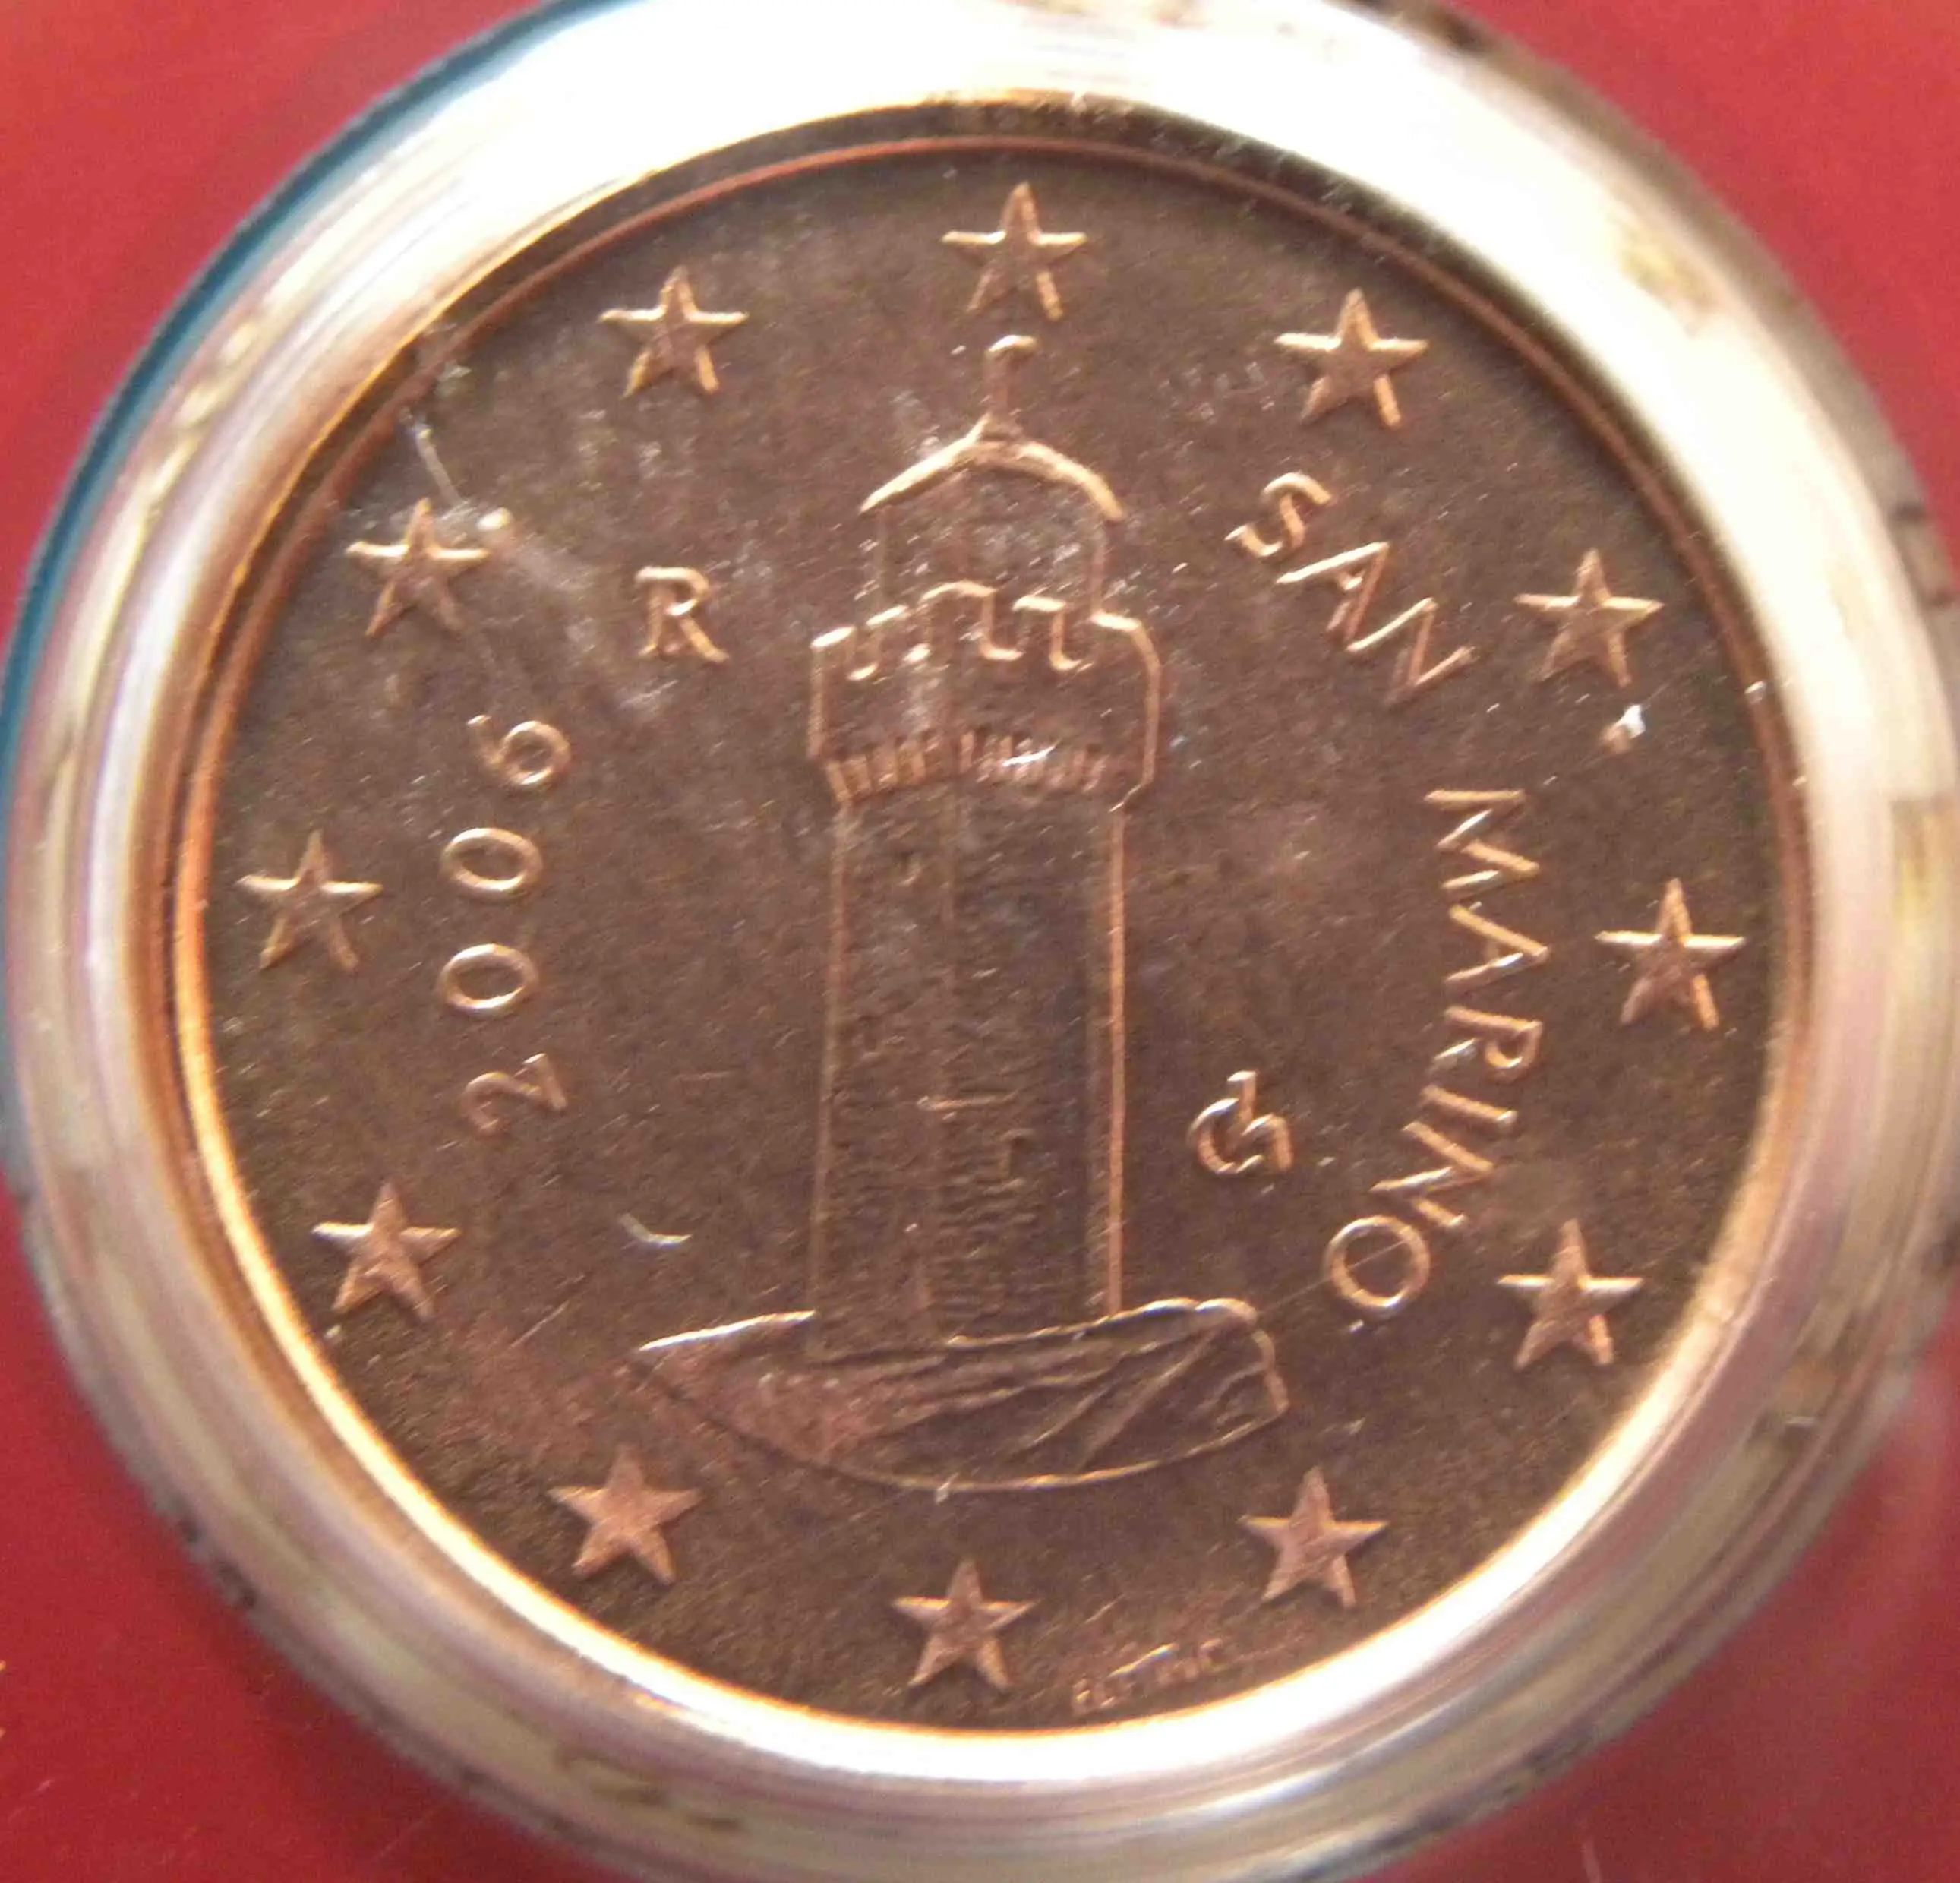 San Marino 1 Cent Münze 2006 - euro-muenzen.tv - Der Online Euromünzen